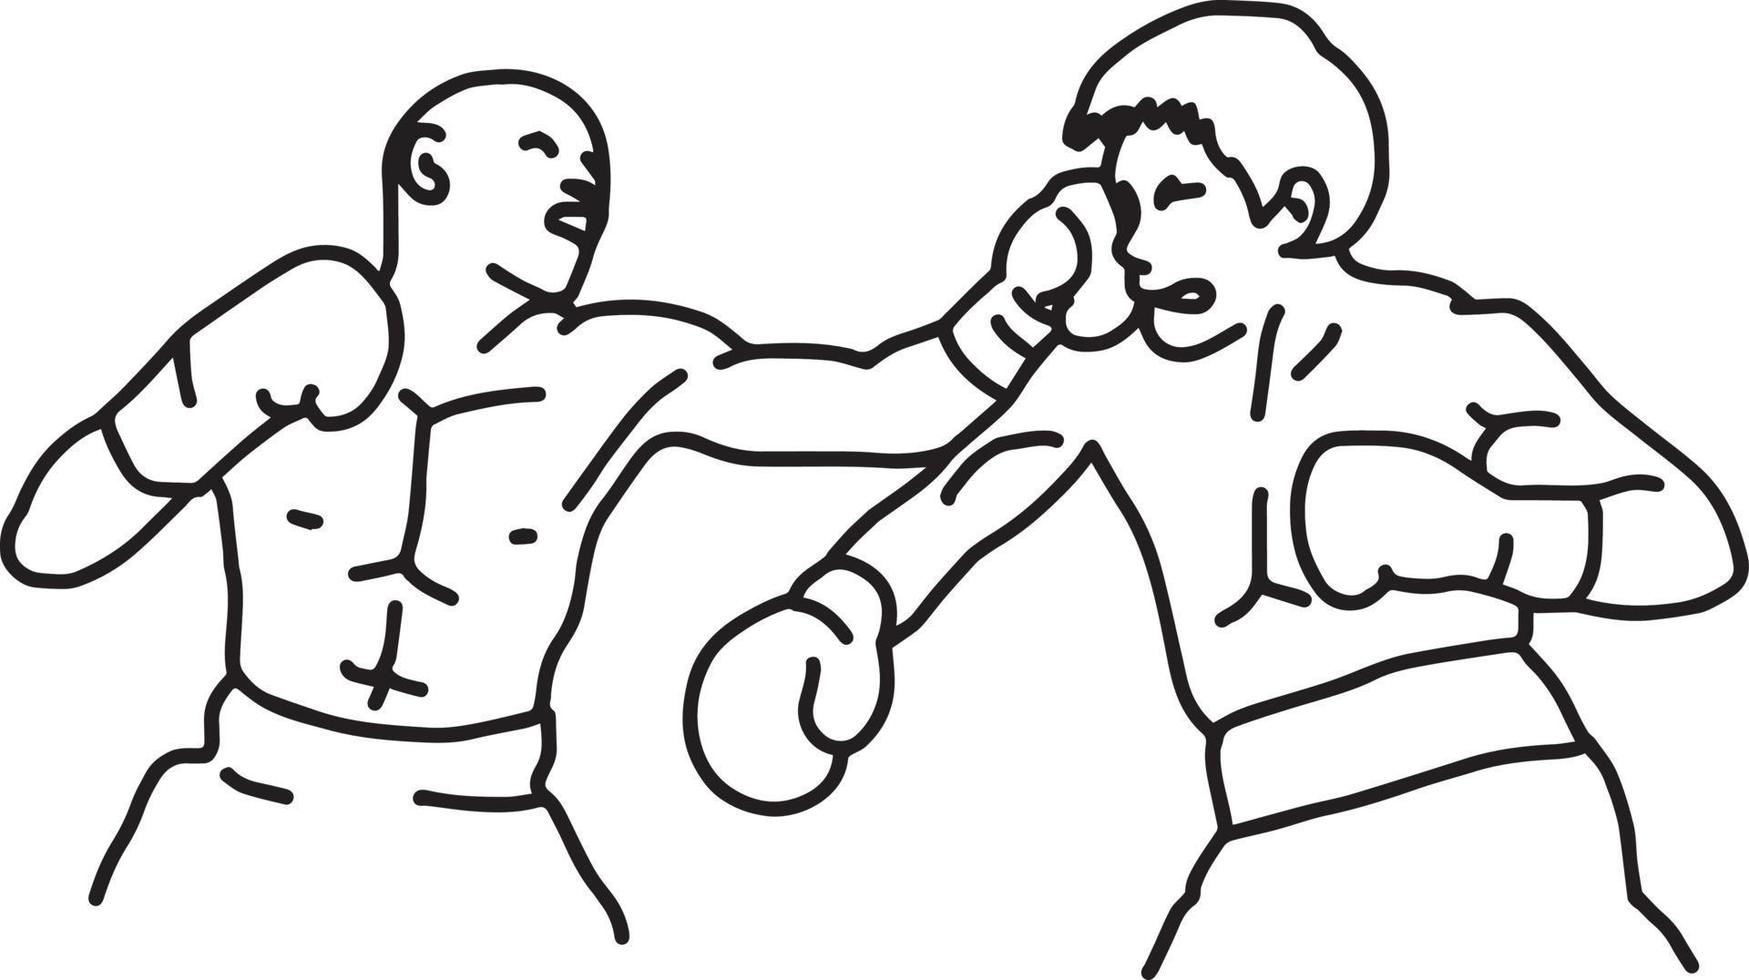 lutador de boxe - ilustração vetorial esboço desenhado à mão vetor